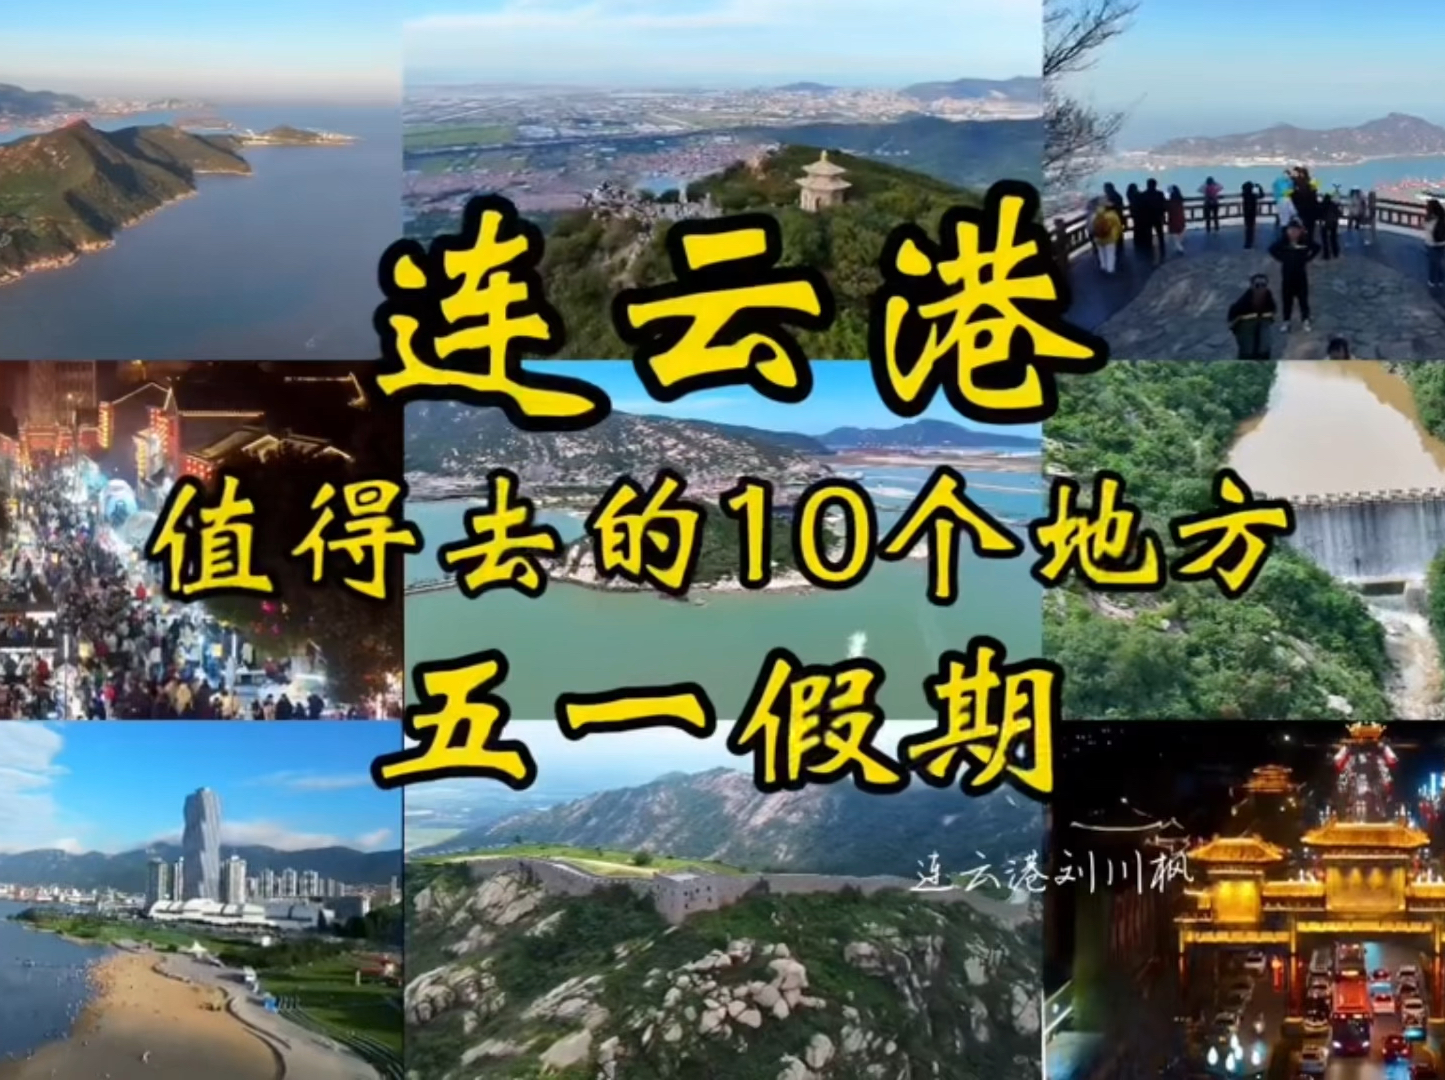 五一假期，连云港值得去的10个地方，送给来连云港旅游的你~ #五一就近旅行日记 #连云港旅行